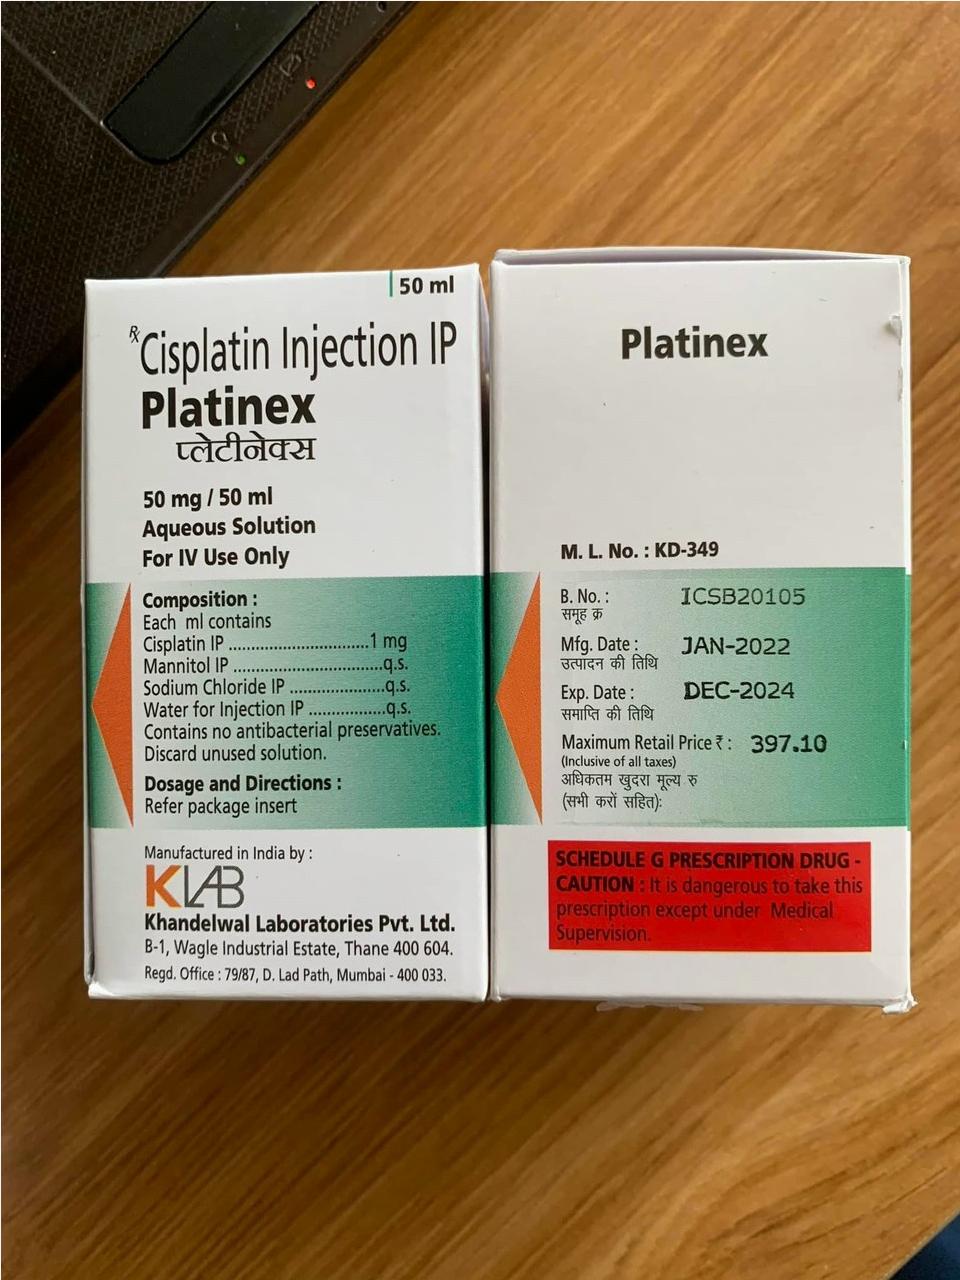 Thuốc Platinex Cisplatin giá bao nhiêu mua ở đâu?